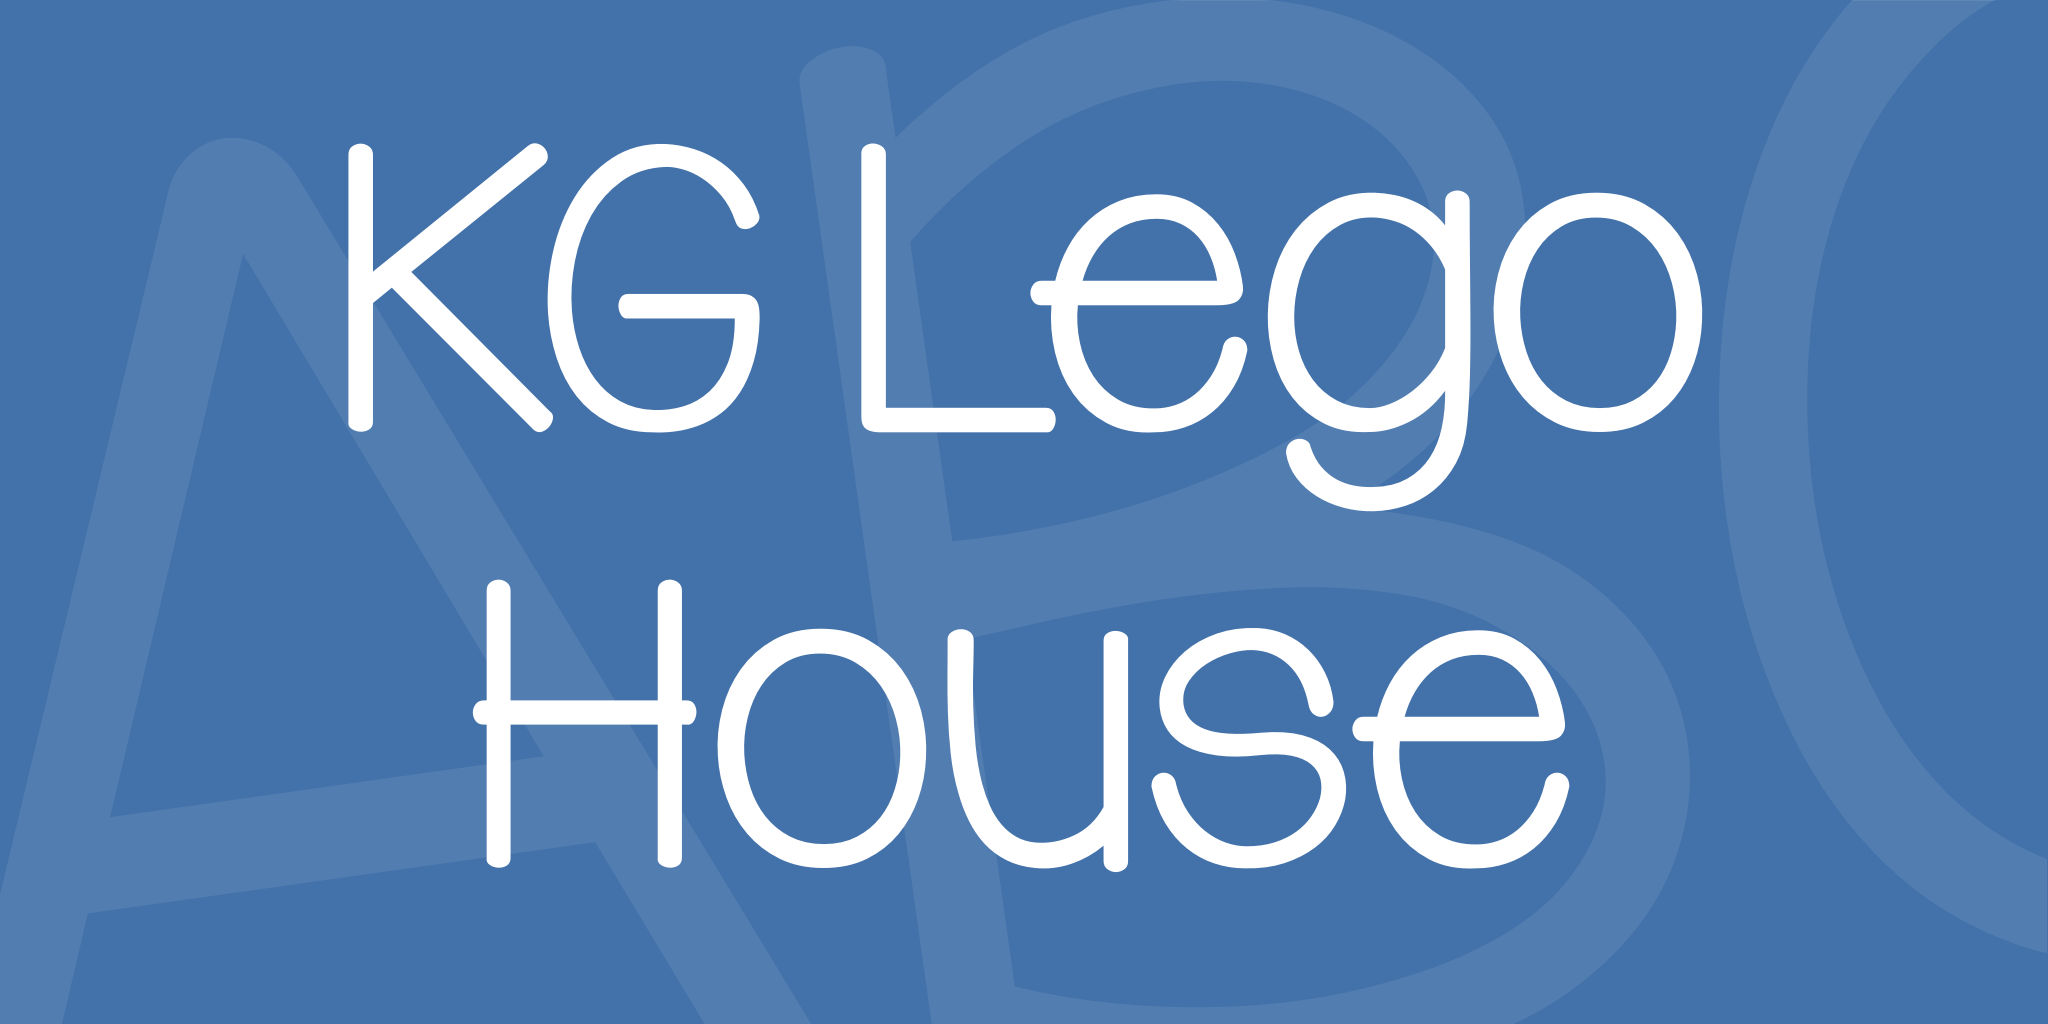 Kg Lego House